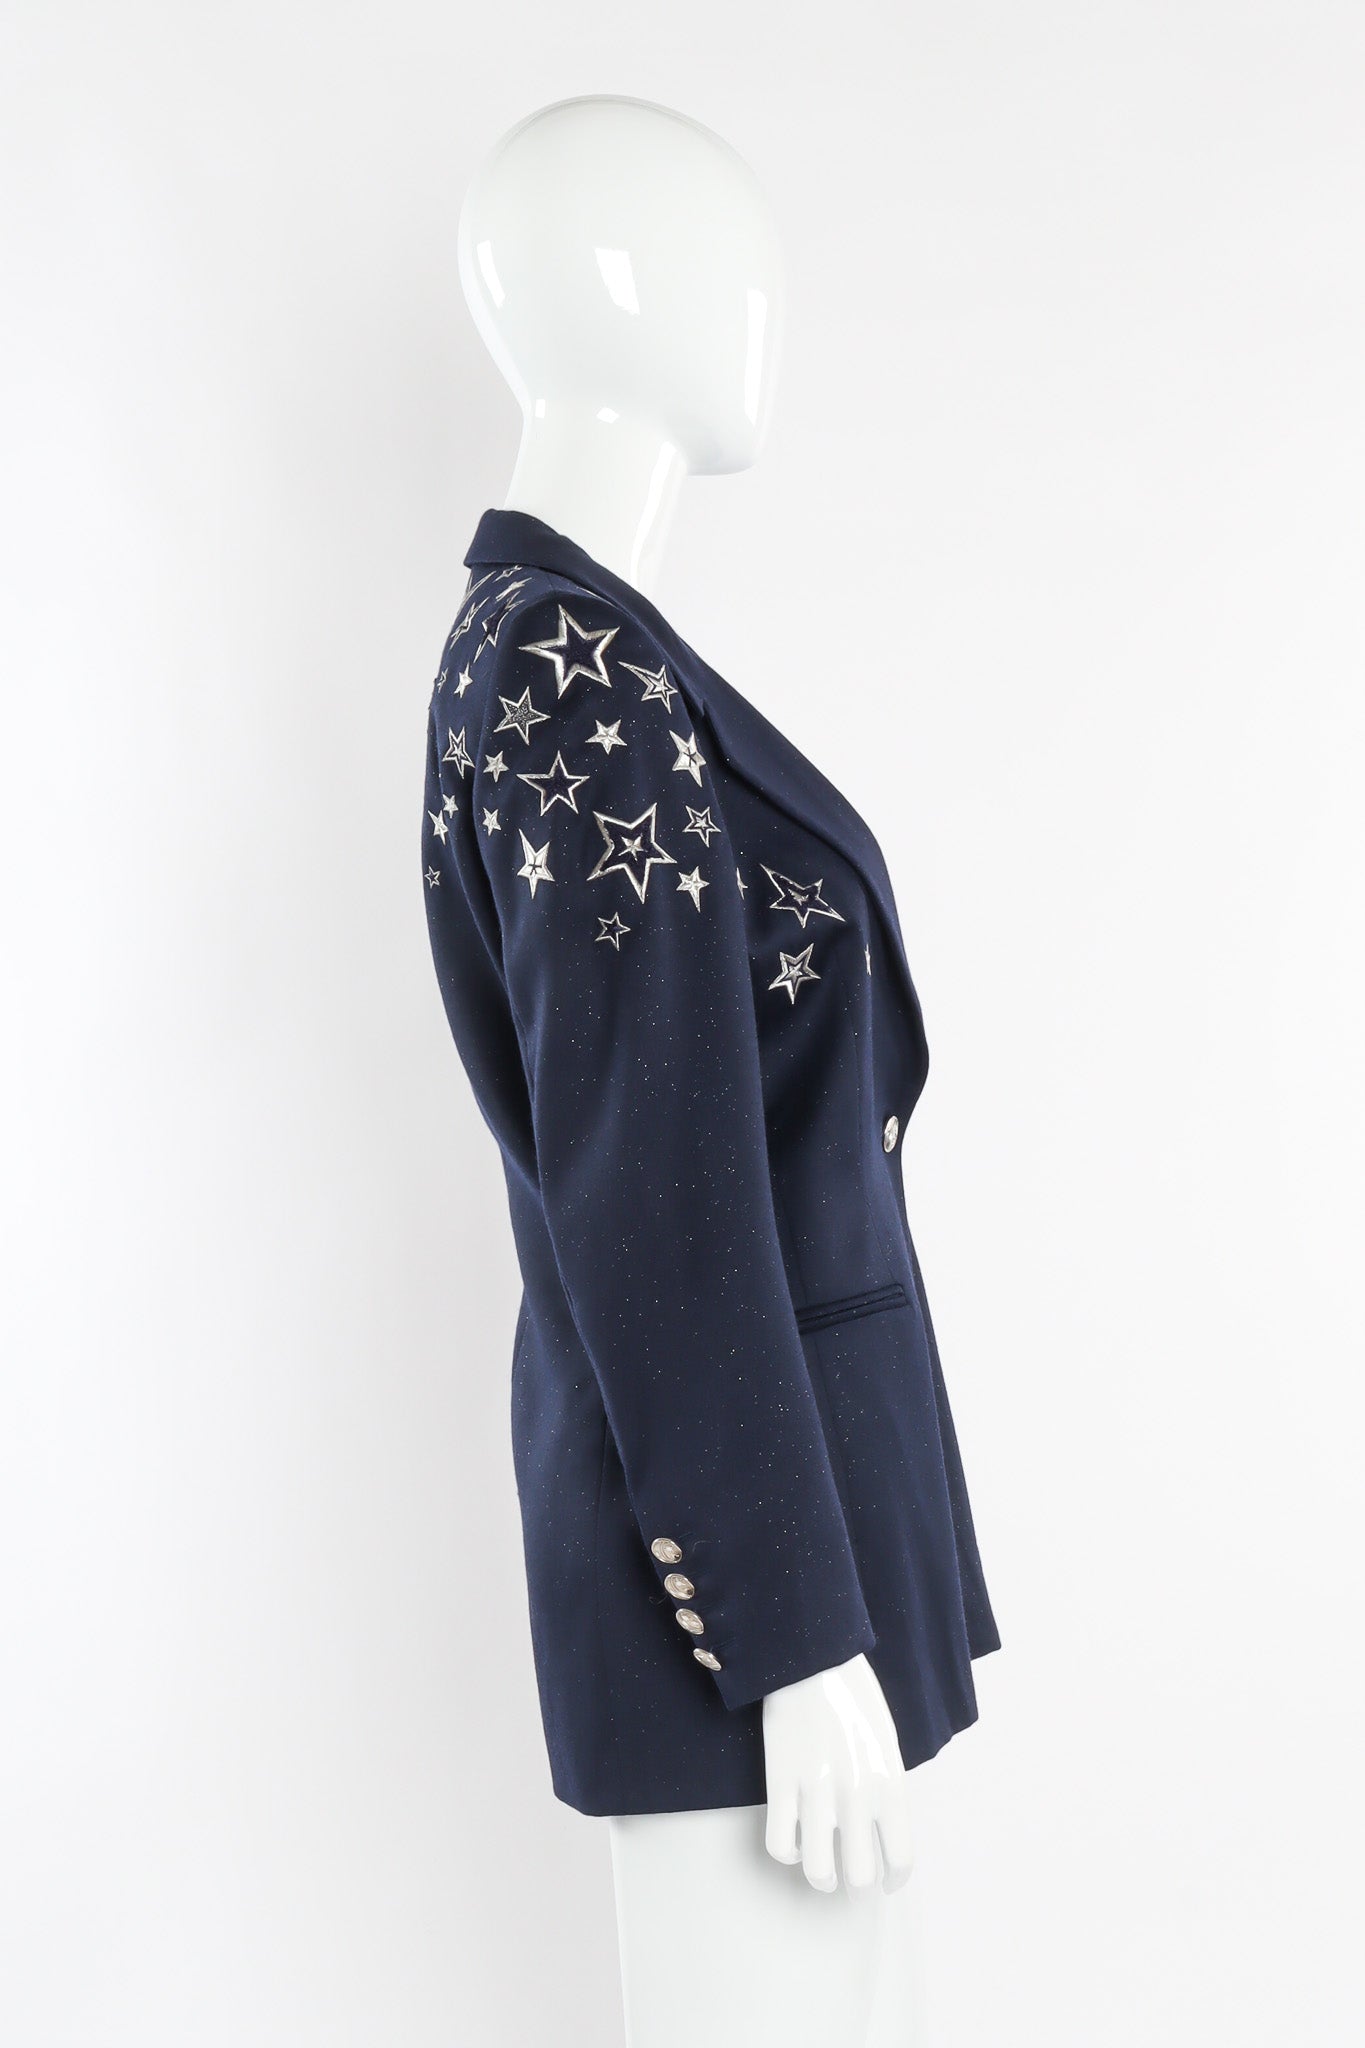 Vintage Escada Embroidered Star Wool Blazer Side View @Recessla